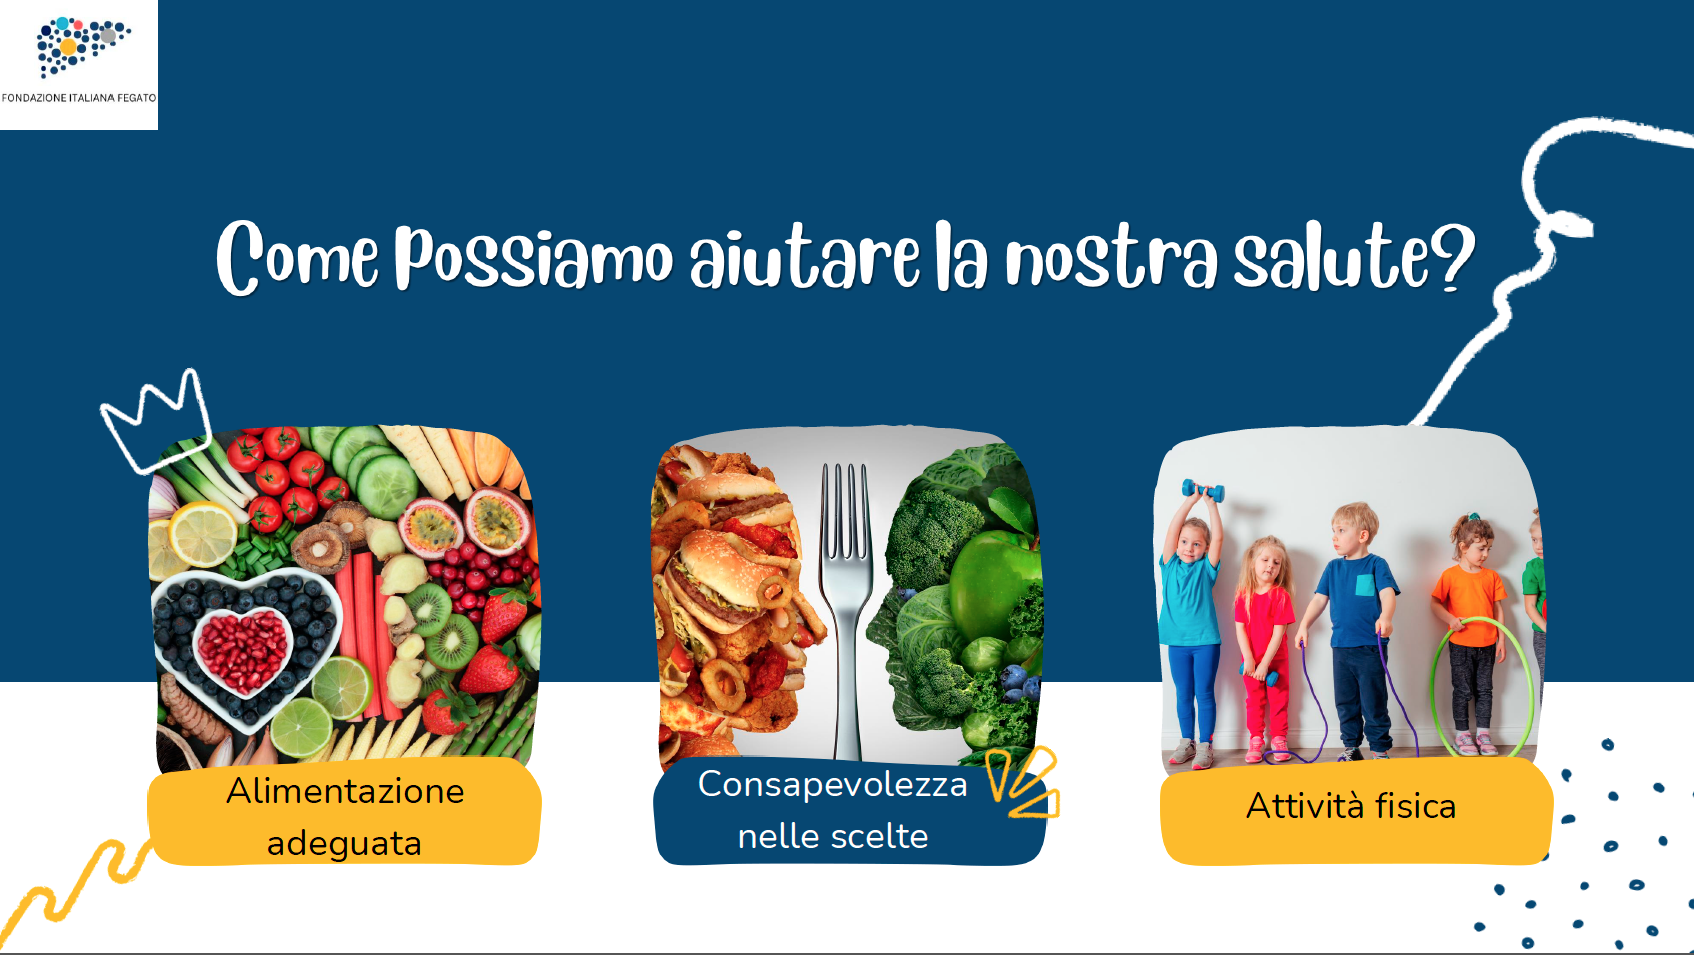 La Fondazione Italiana Fegato Onlus a “TriesteNext 2023” per illustrare alla cittadinanza le correlazioni tra la nutrizione e il fegato